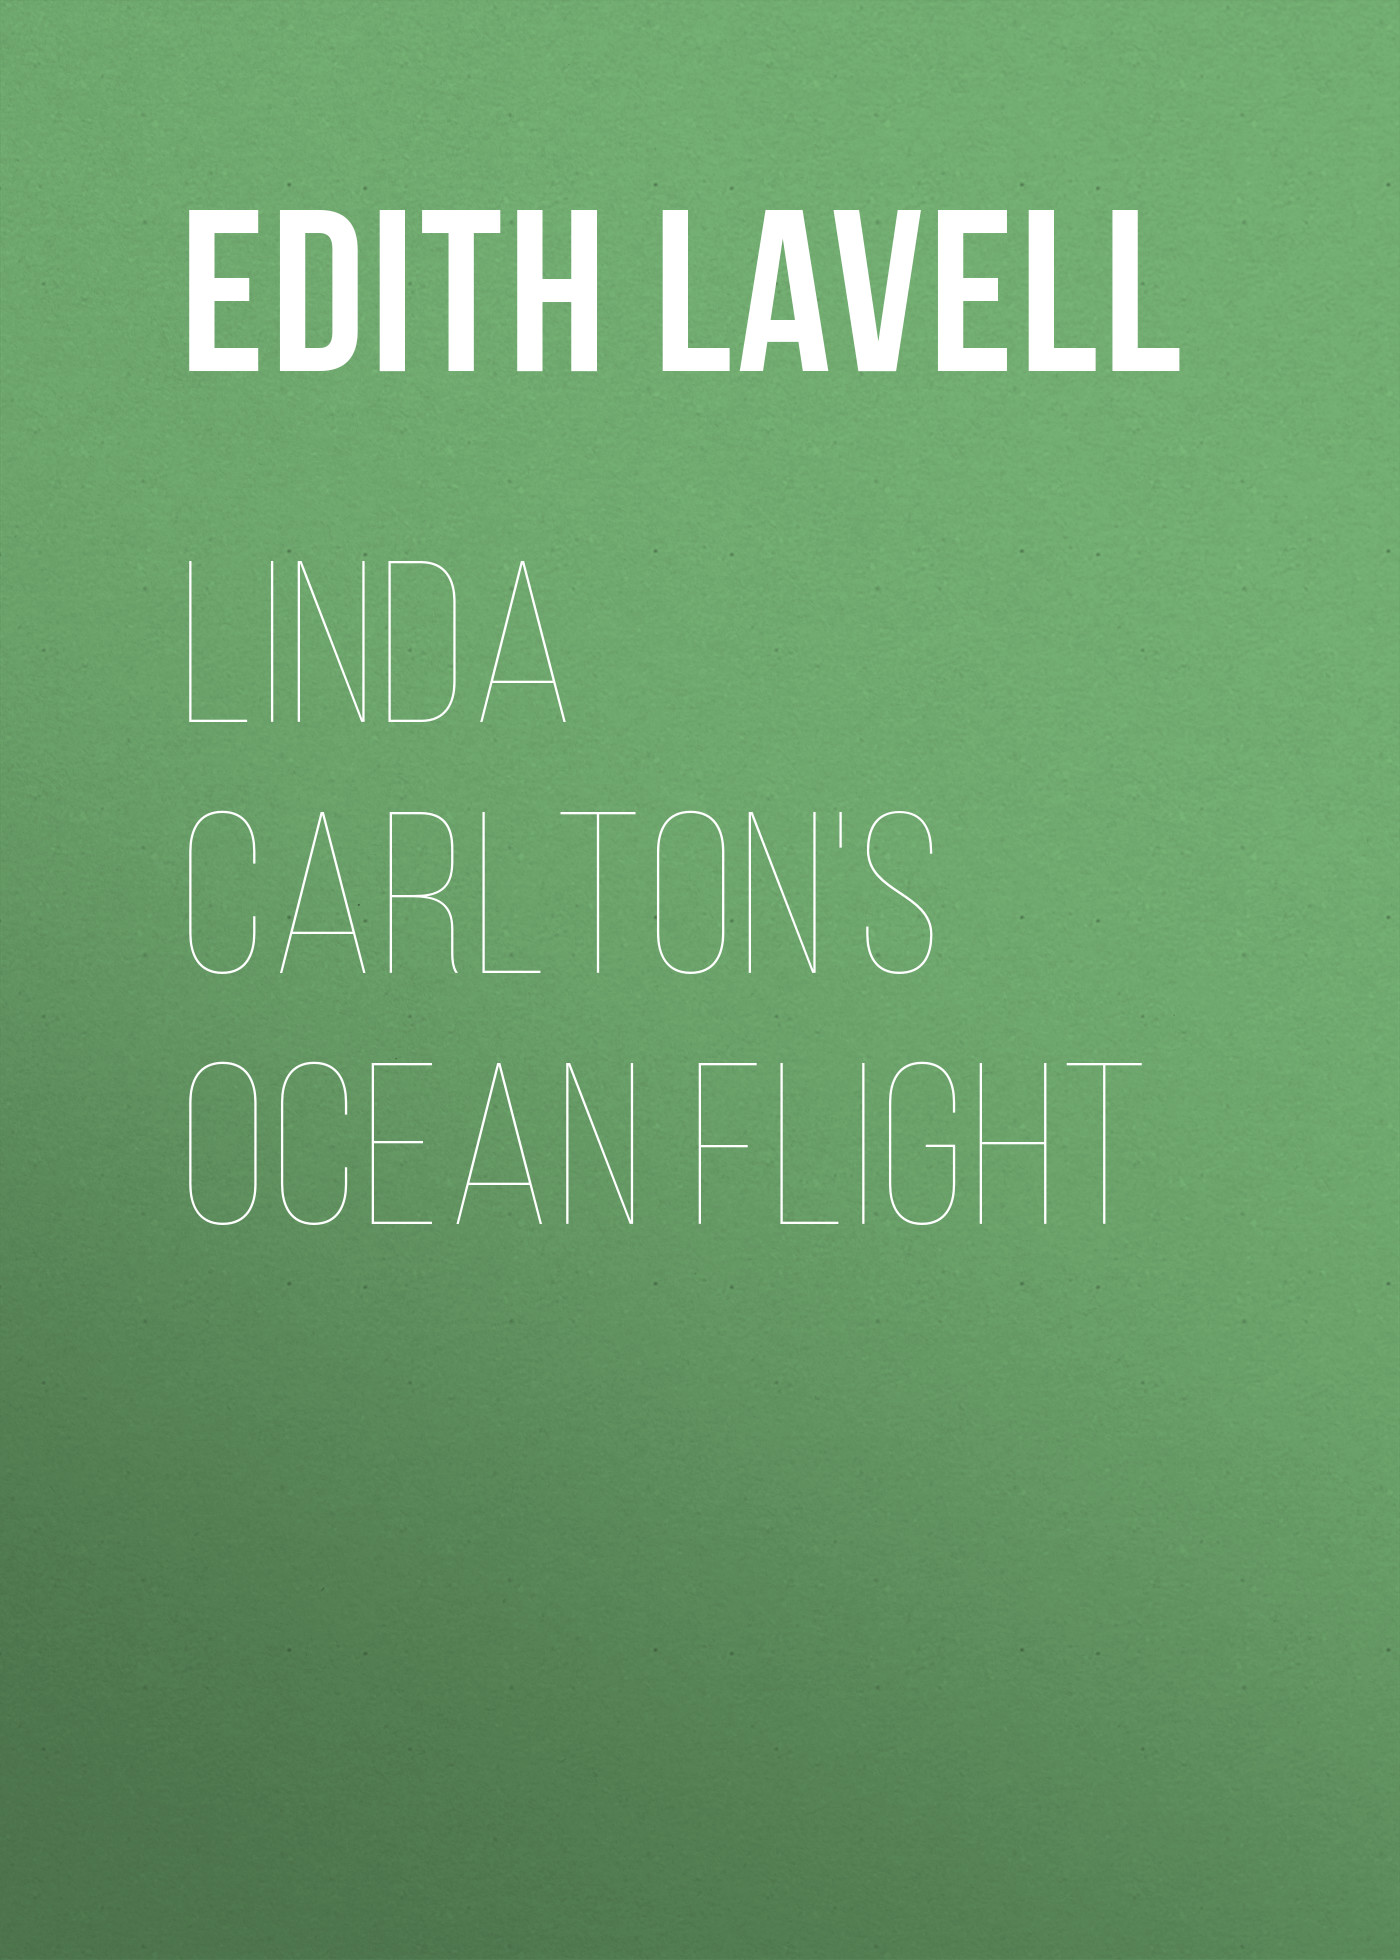 Книга Linda Carlton's Ocean Flight из серии , созданная Edith Lavell, может относится к жанру Приключения: прочее, Зарубежная классика. Стоимость электронной книги Linda Carlton's Ocean Flight с идентификатором 23166779 составляет 5.99 руб.